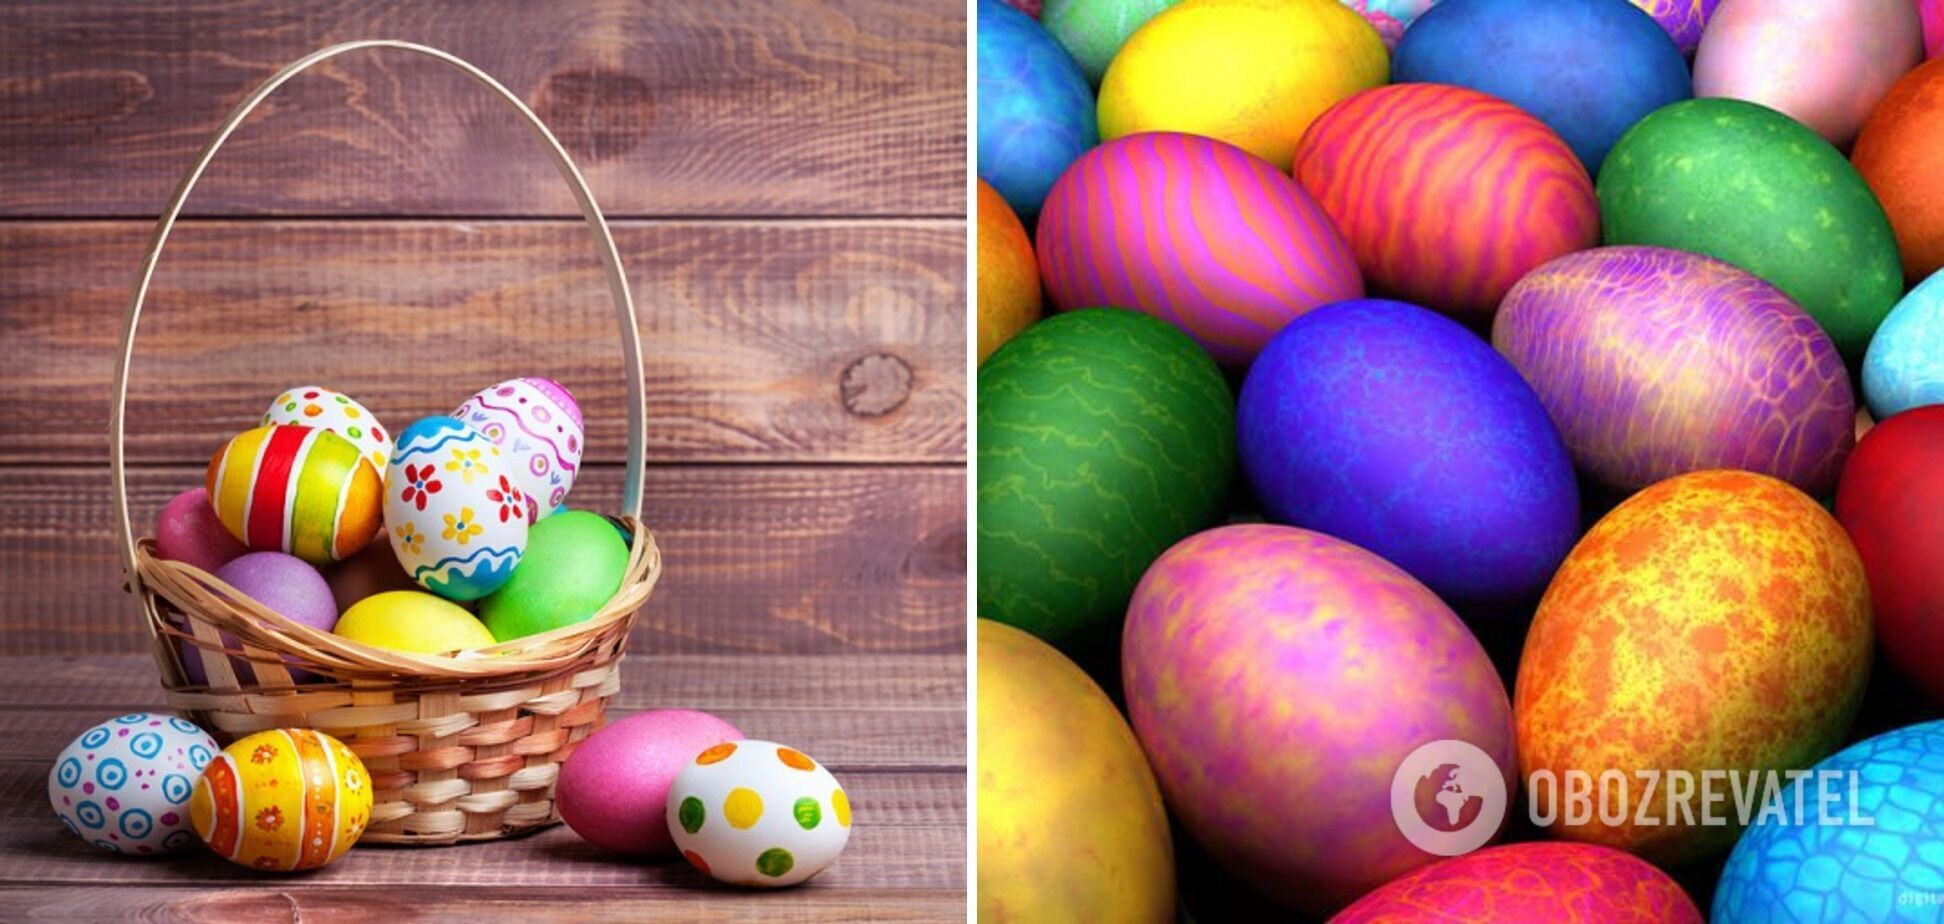 Чем категорически запрещено красить яйца на Пасху: этими красителями можно отравиться